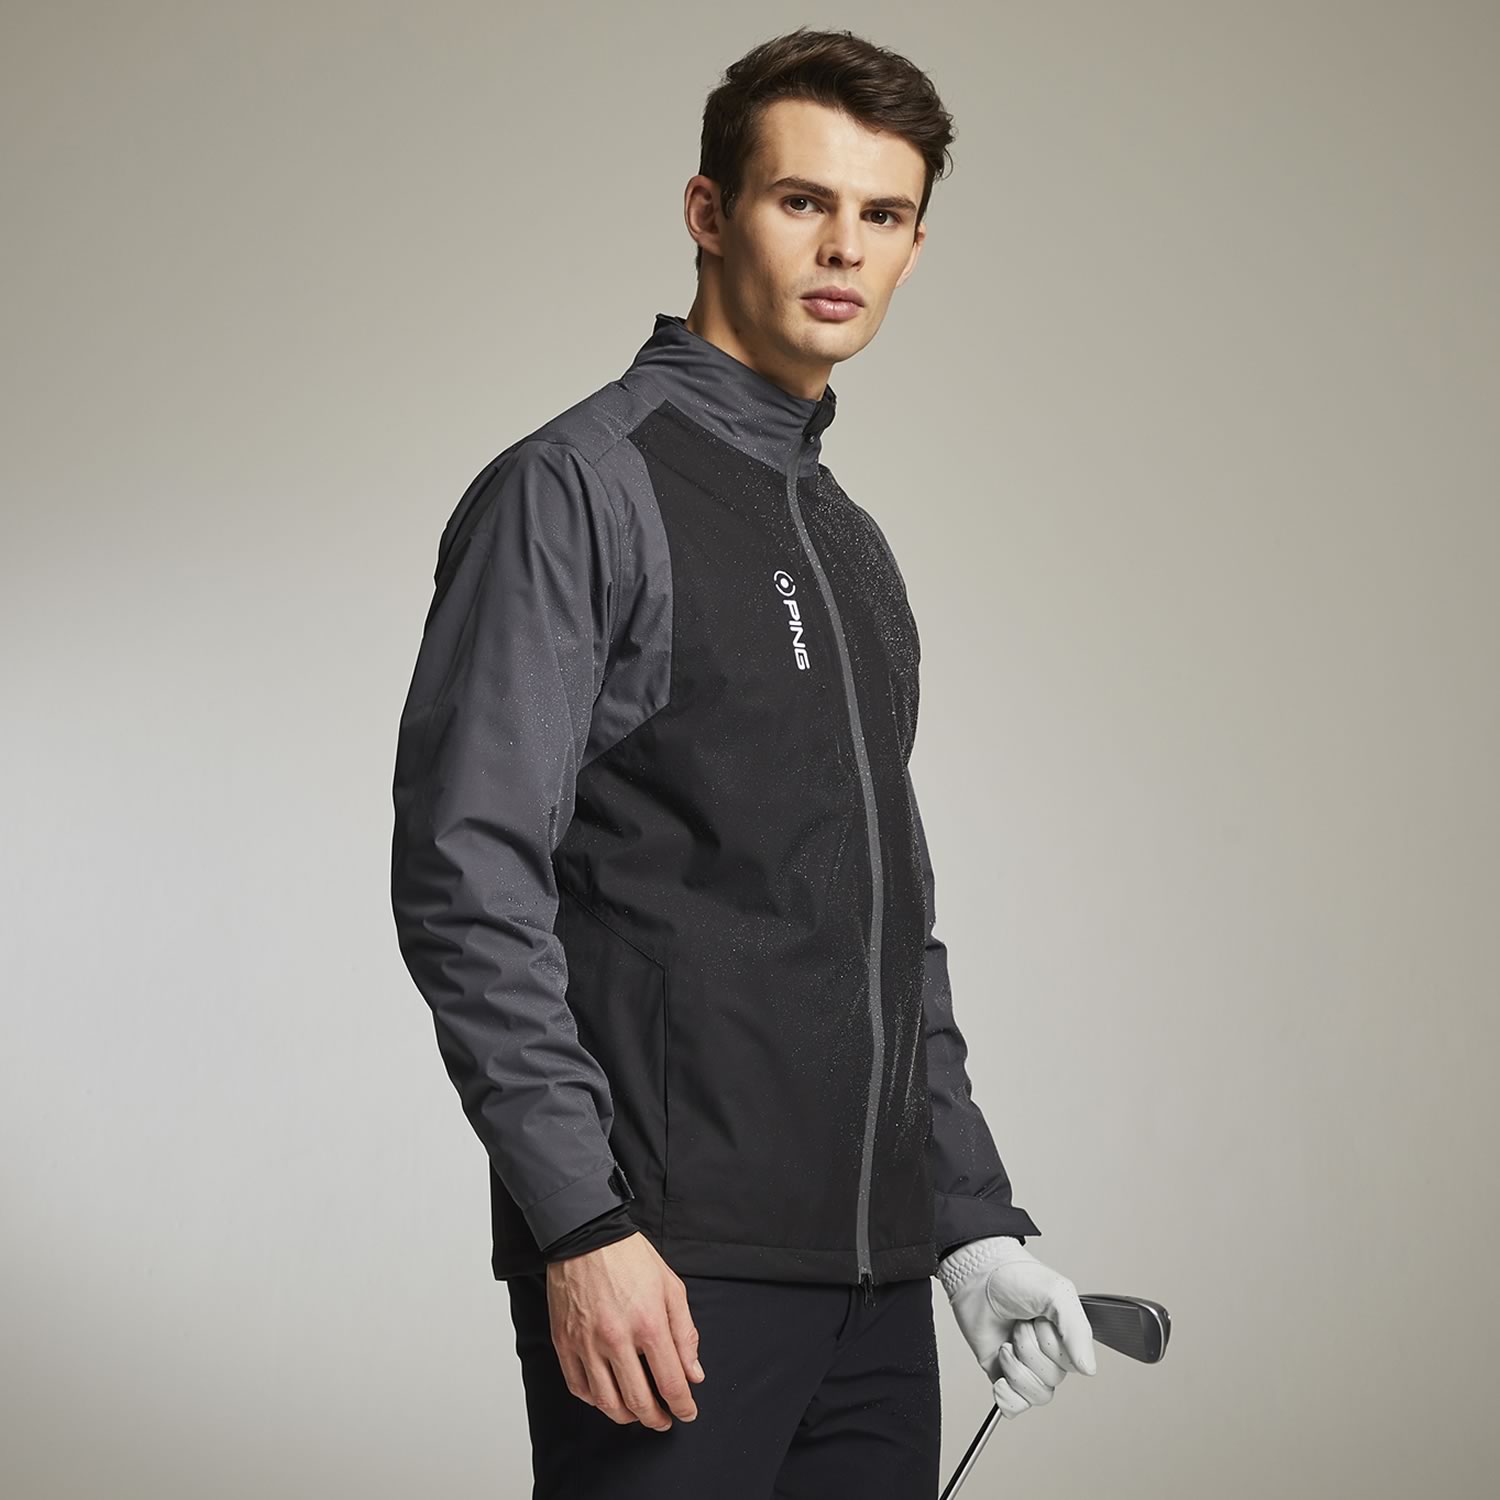 PING Sensordry Pro Waterproof Jacket Black/Asphalt | Scottsdale Golf